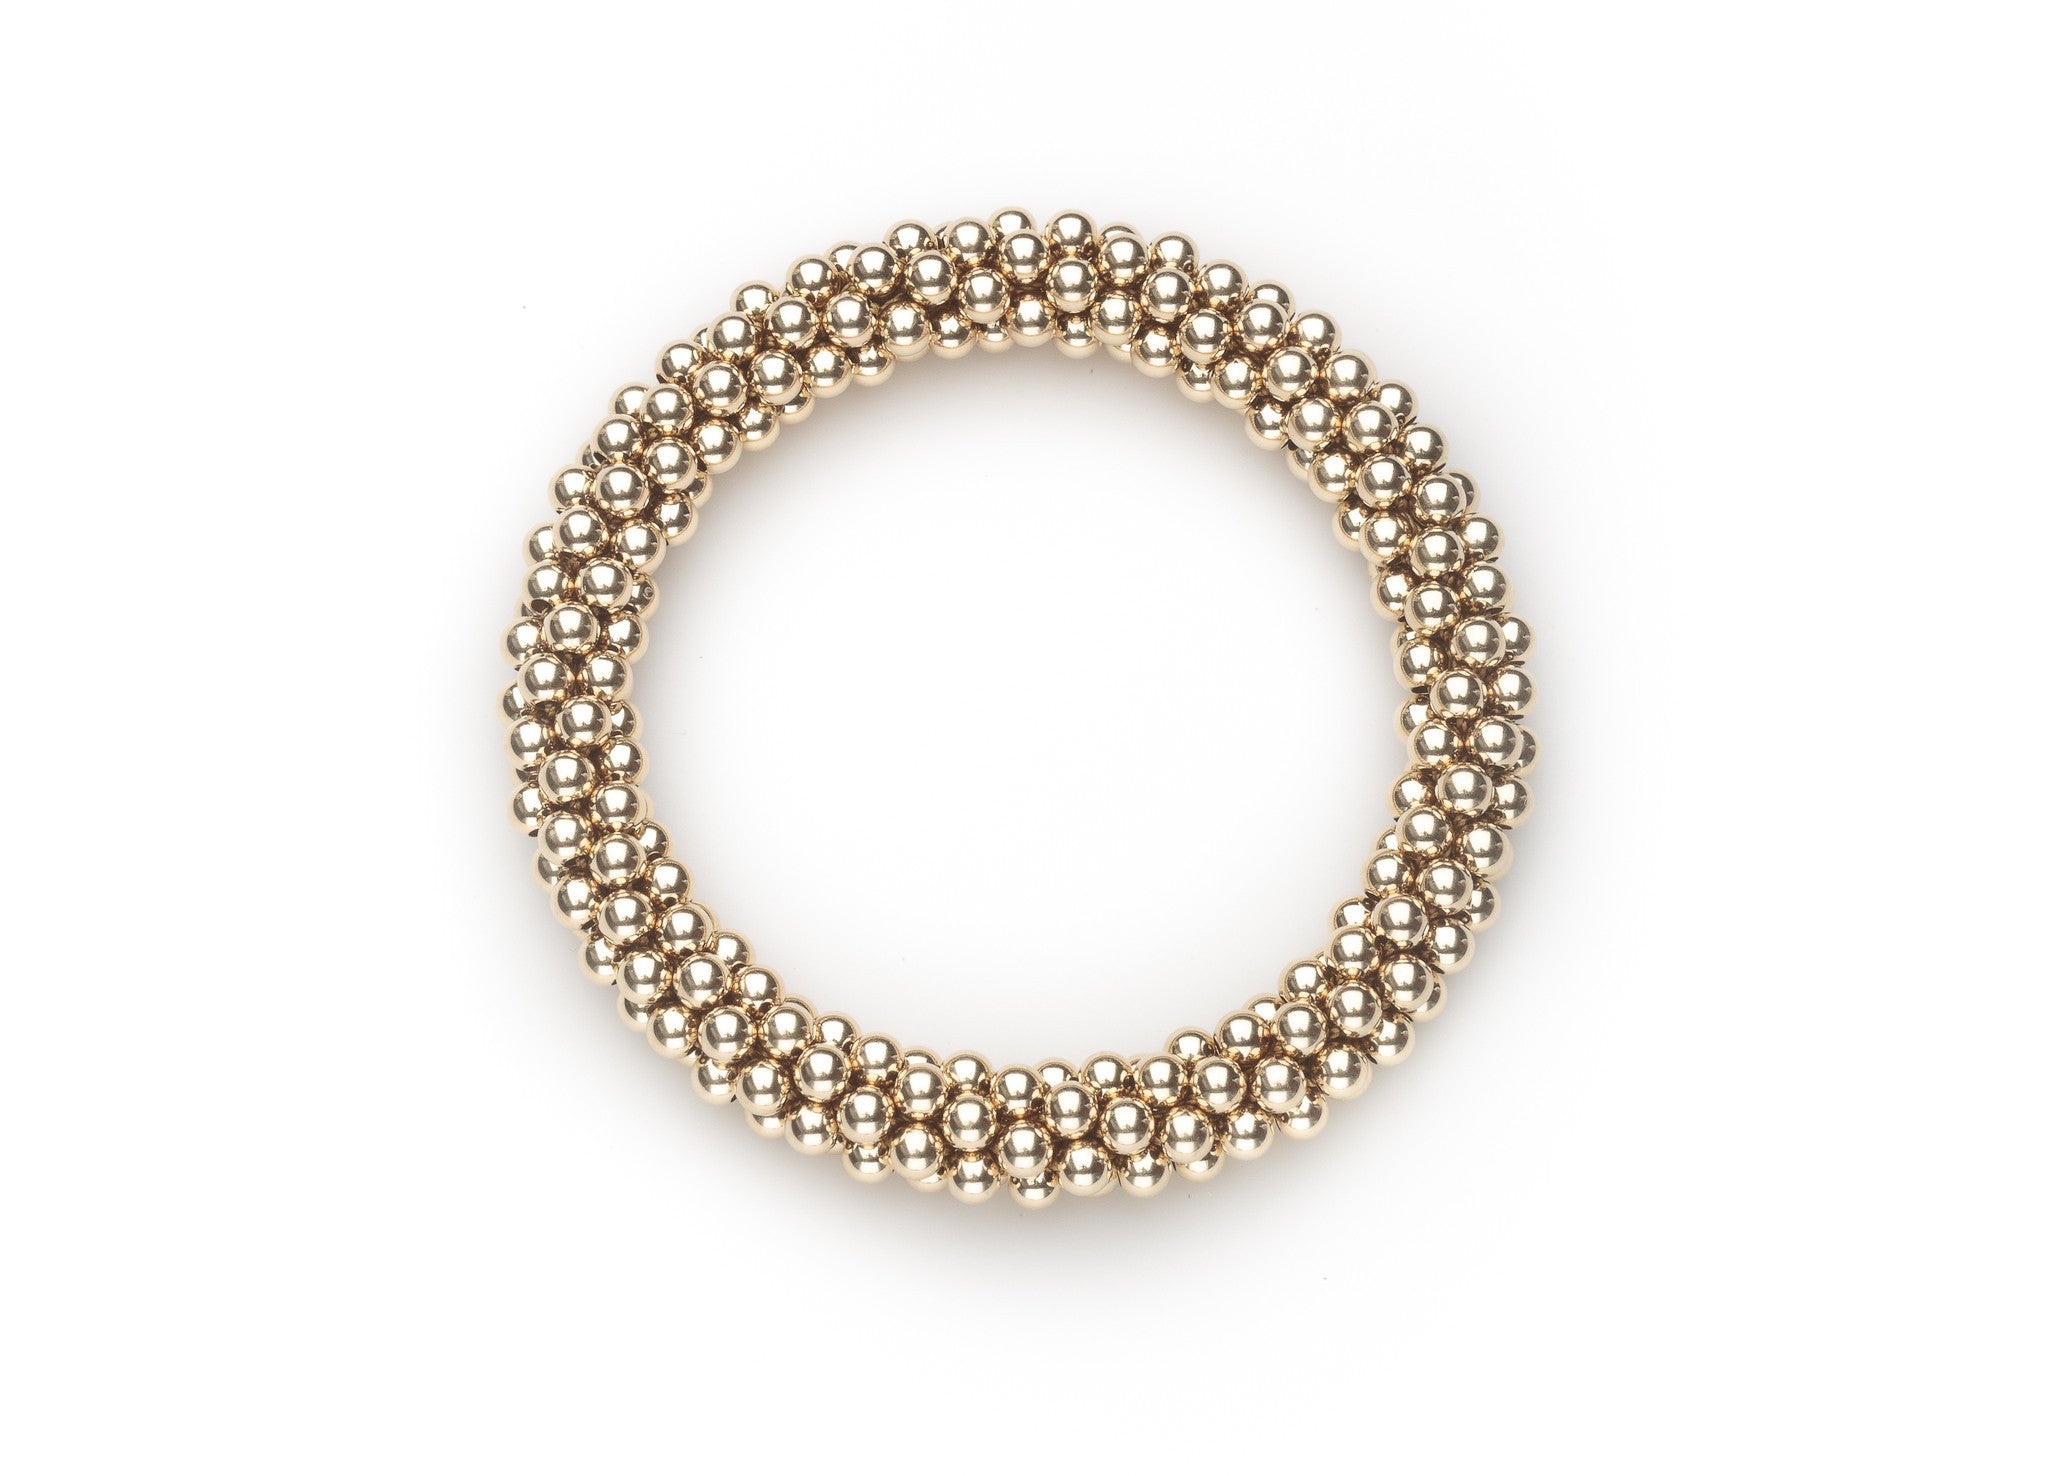 14k Gold-Filled Cluster Bracelets - Standard 4 mm Beads